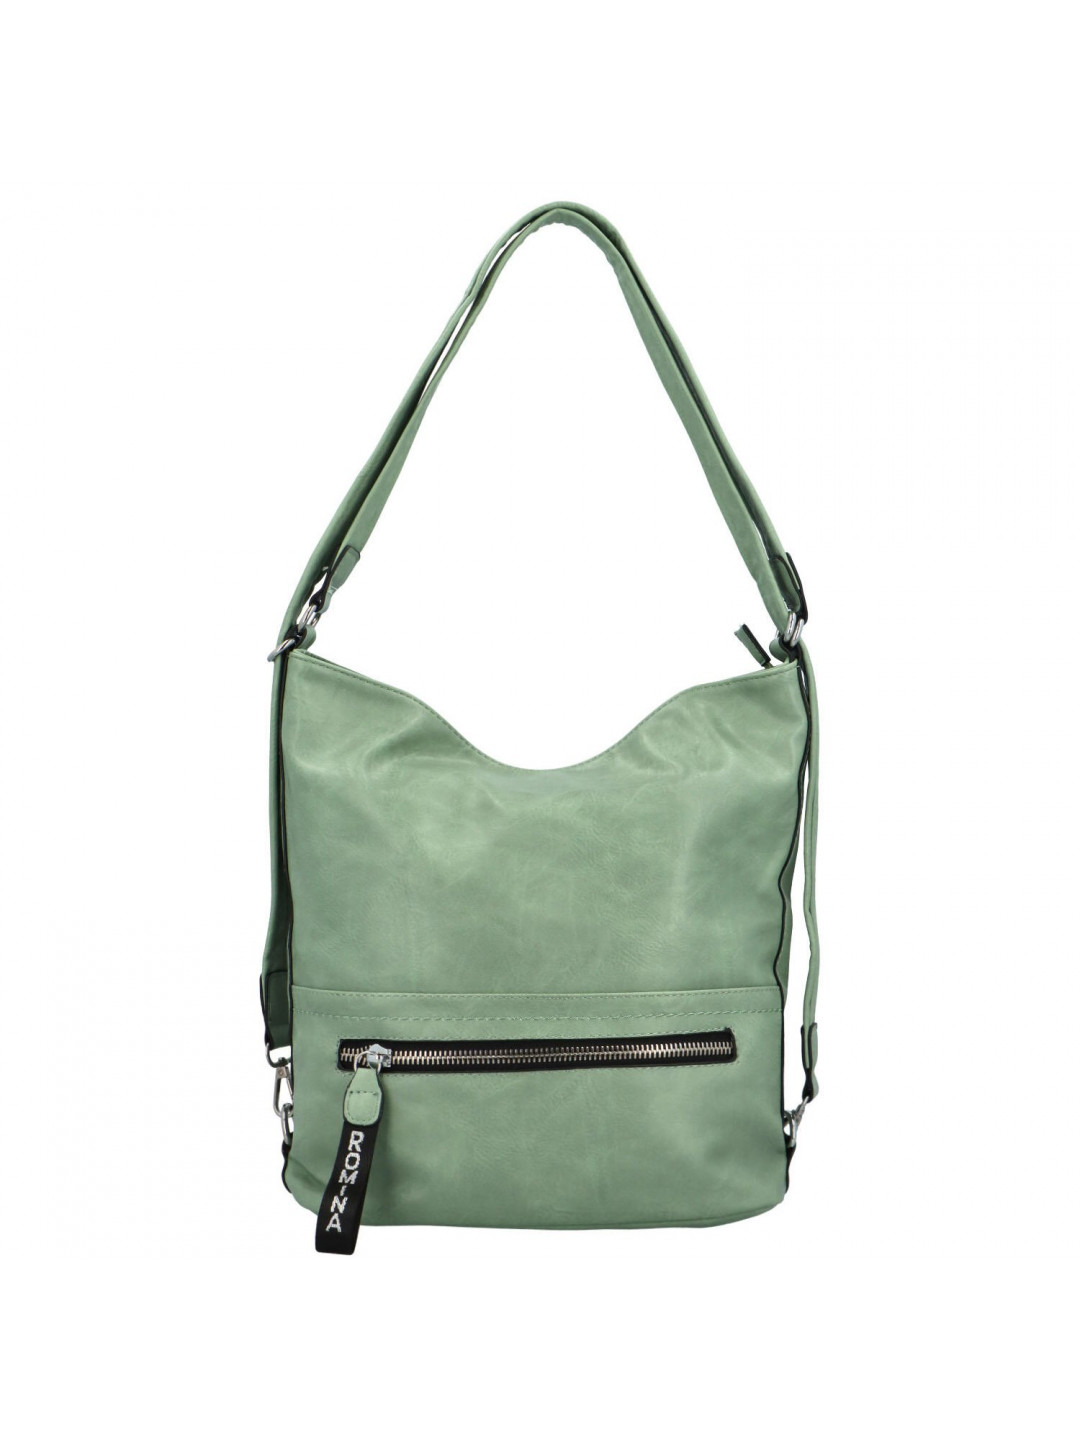 Stylový dámský kabelko-batoh Trittia světle zelená